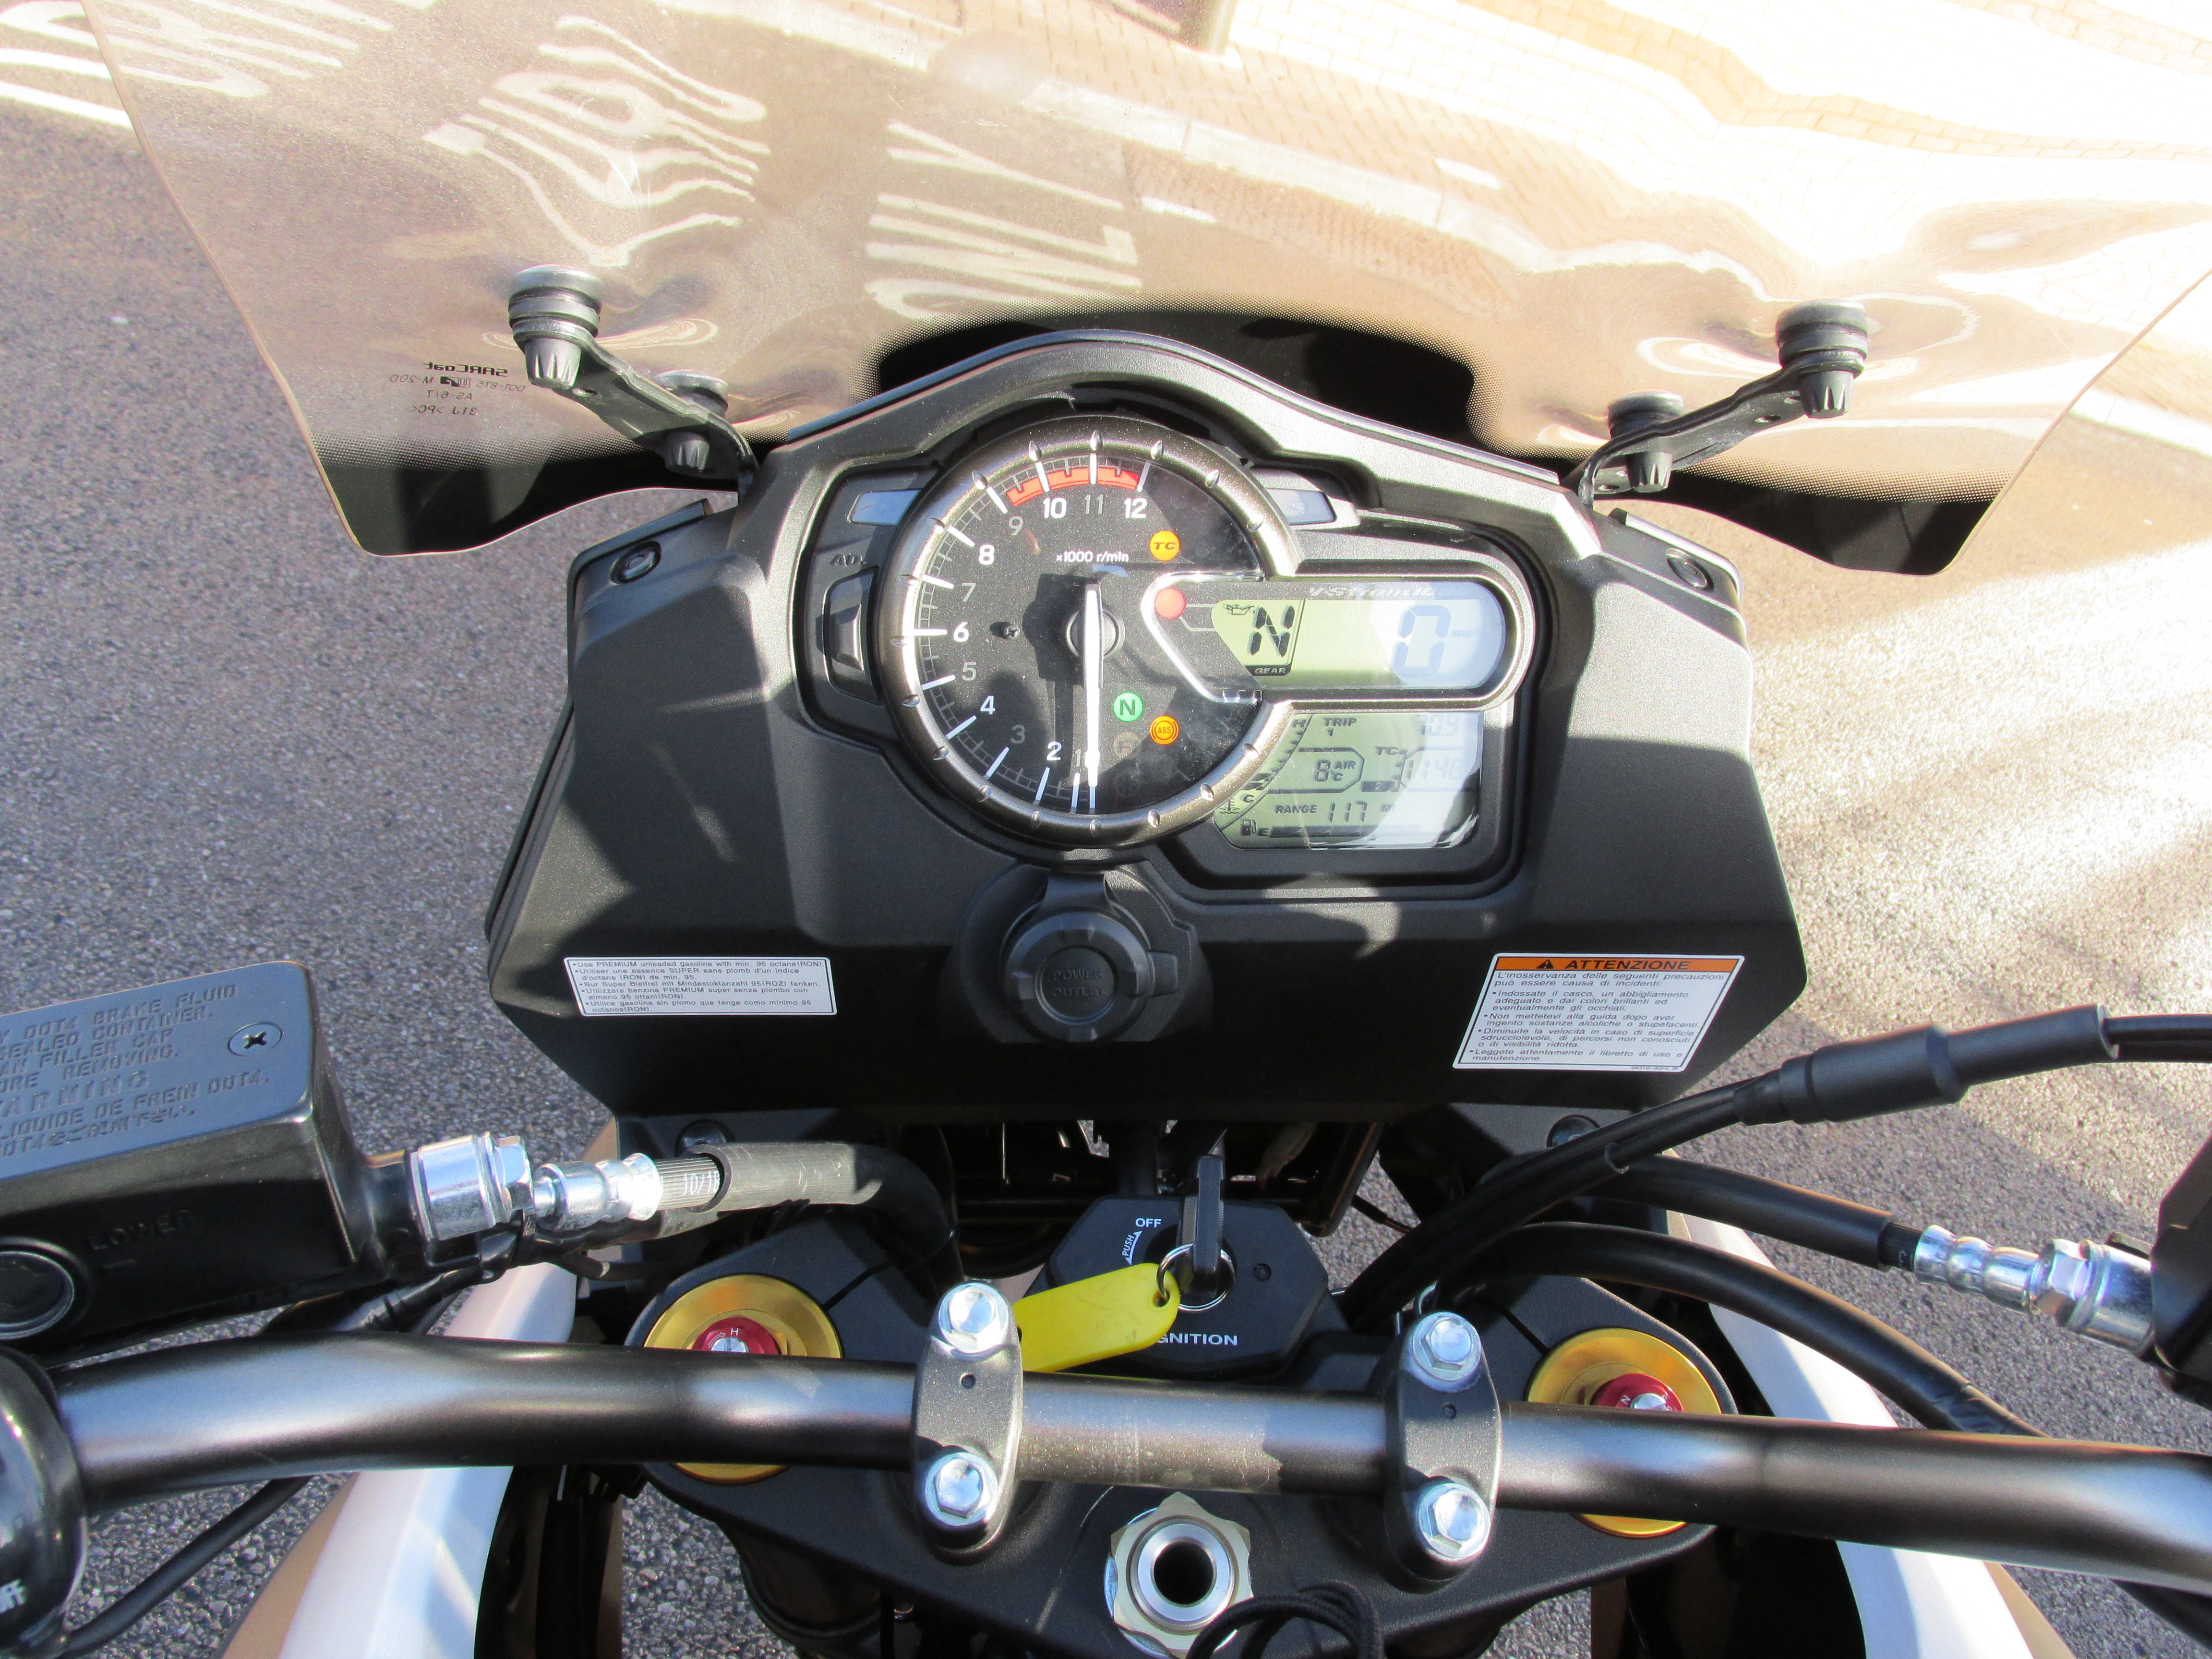 First ride: Suzuki V-Strom 1000 review